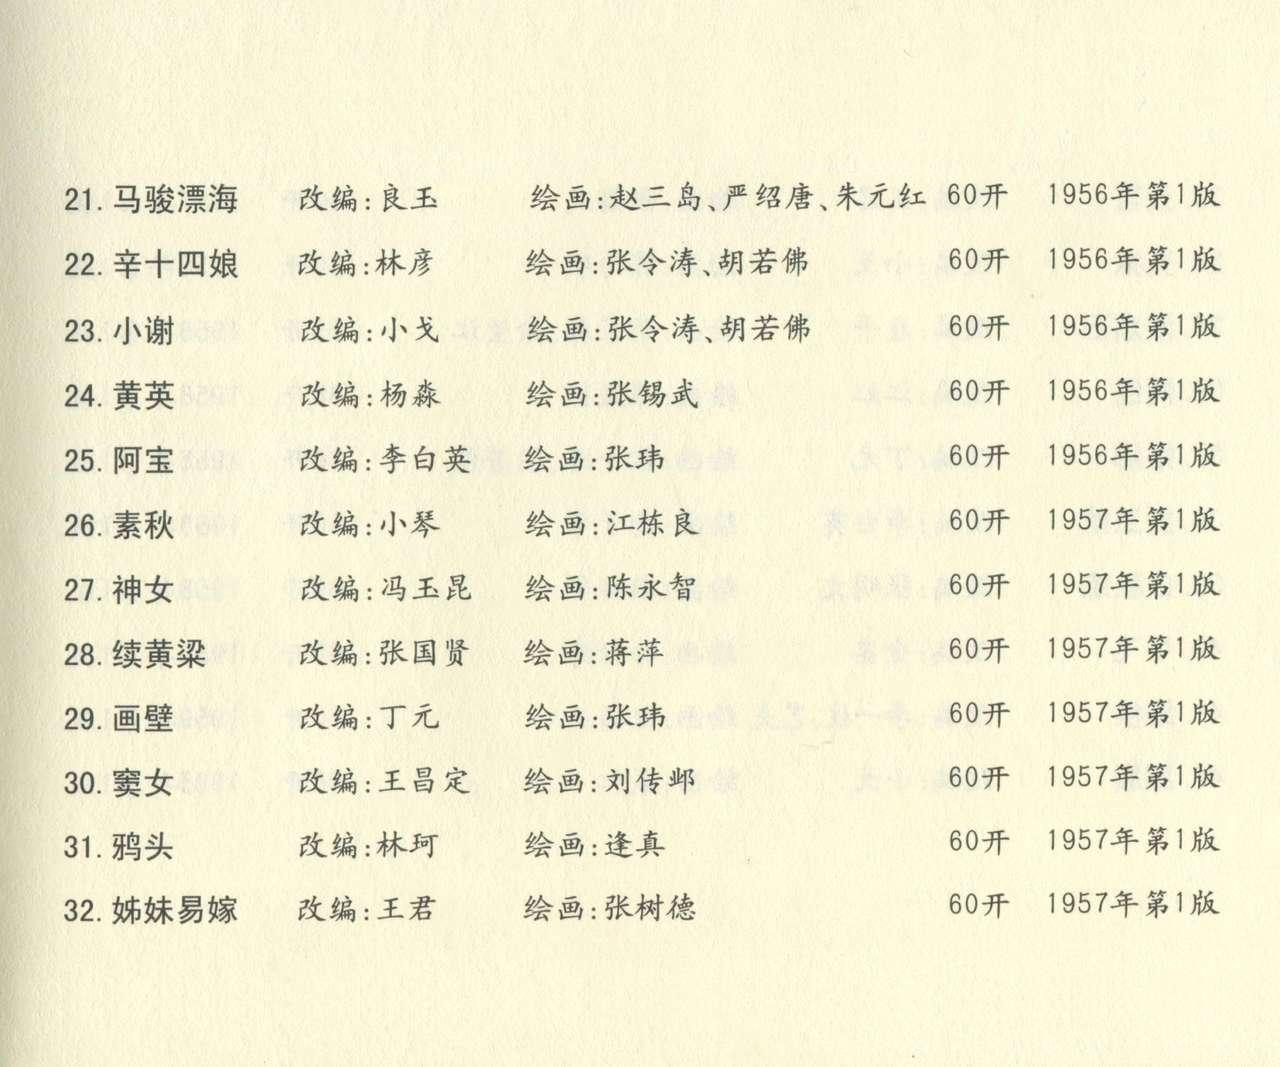 聊斋志异 张玮等绘 天津人民美术出版社 卷二十一 ~ 三十 679